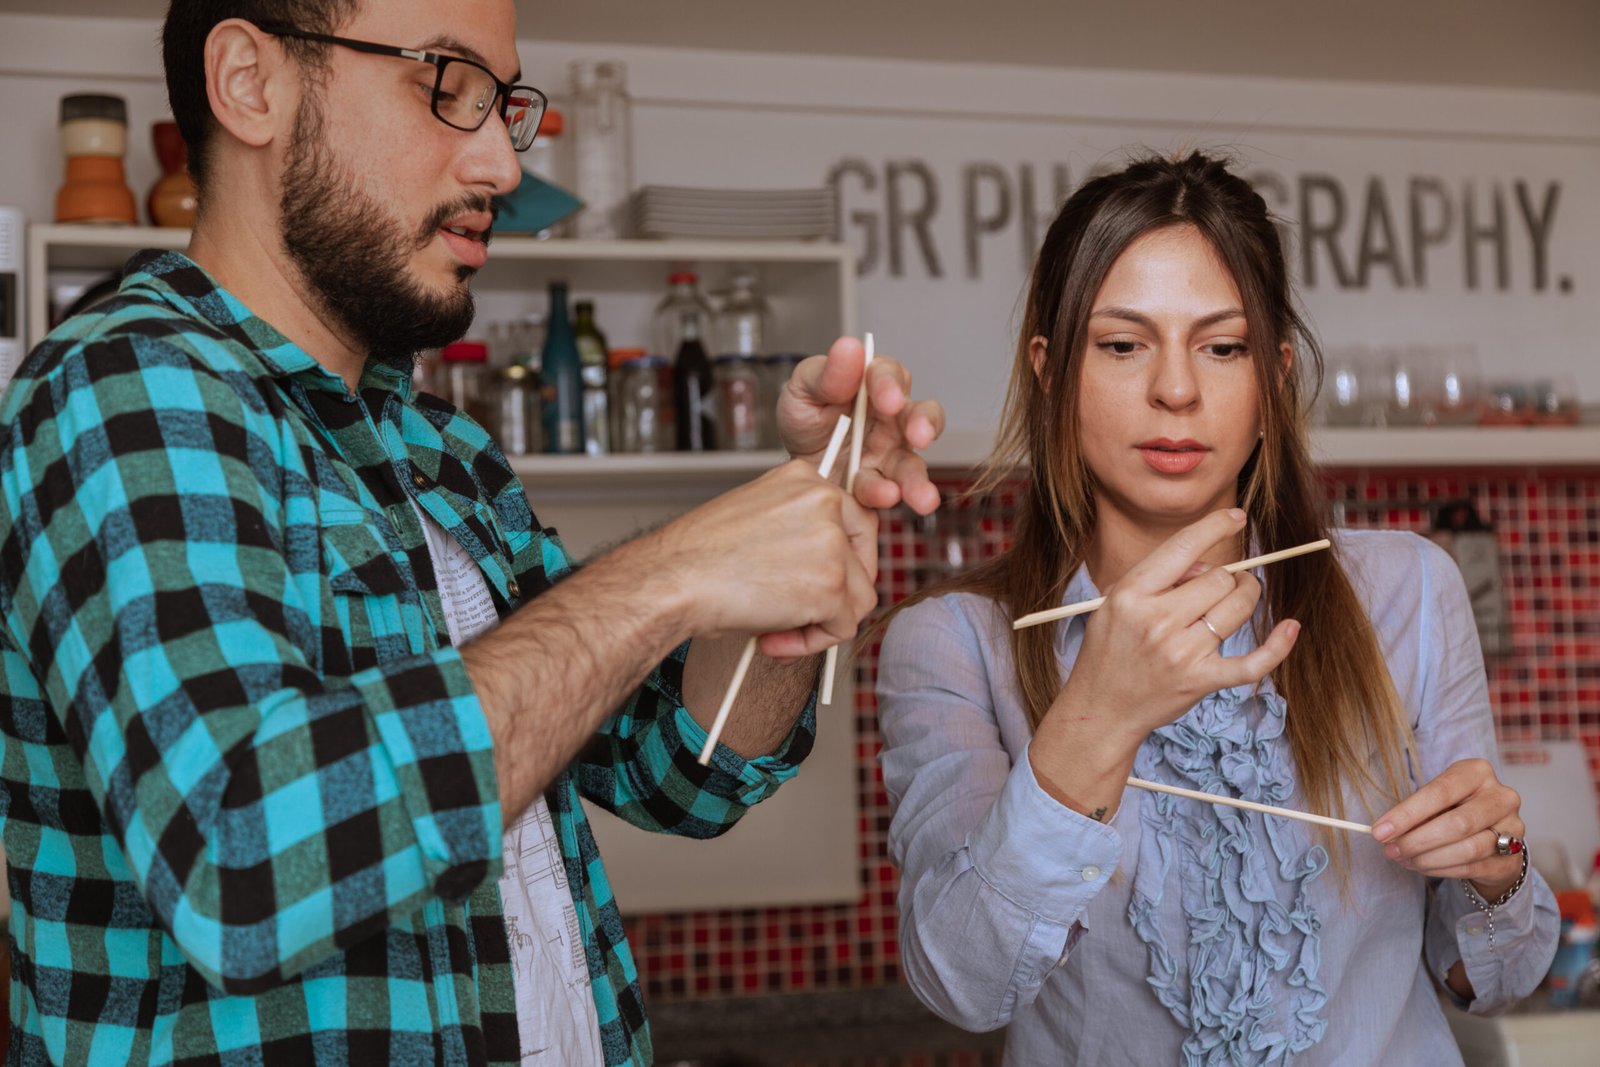 Un homme enseigne à une femme comment utiliser des baguettes dans une cuisine, symbolisant un moment d'apprentissage partagé.